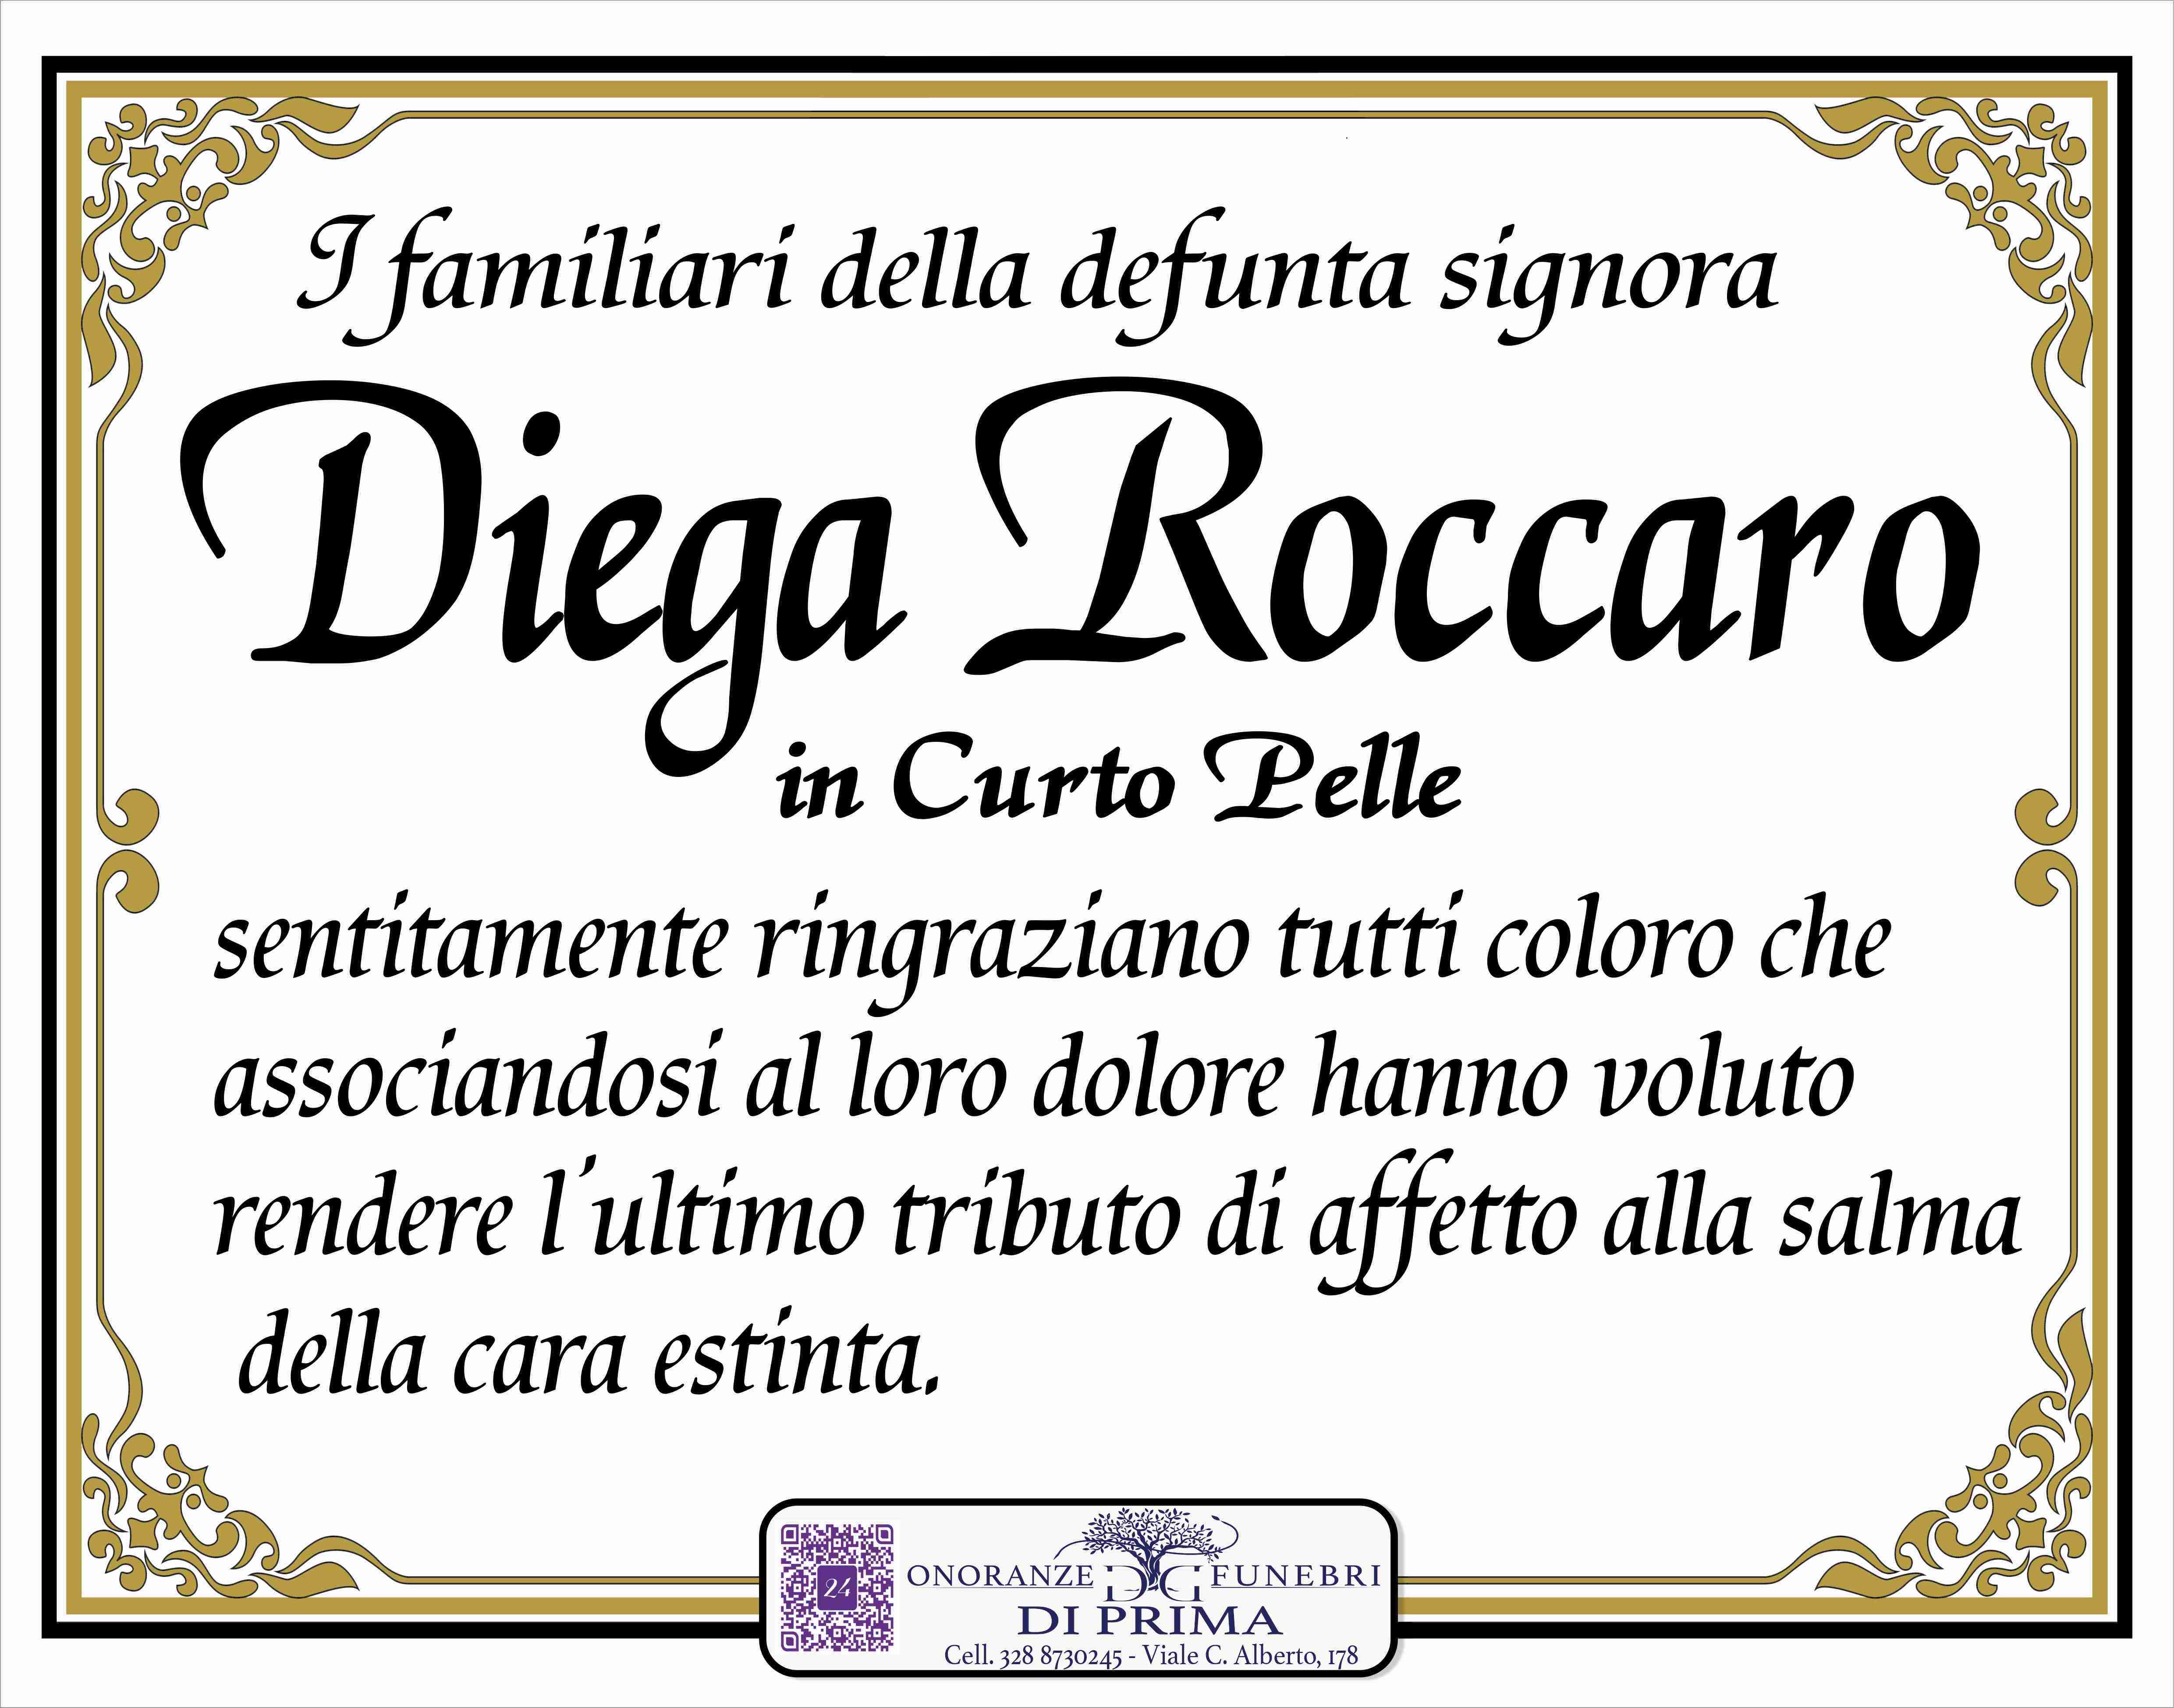 Diega Roccaro